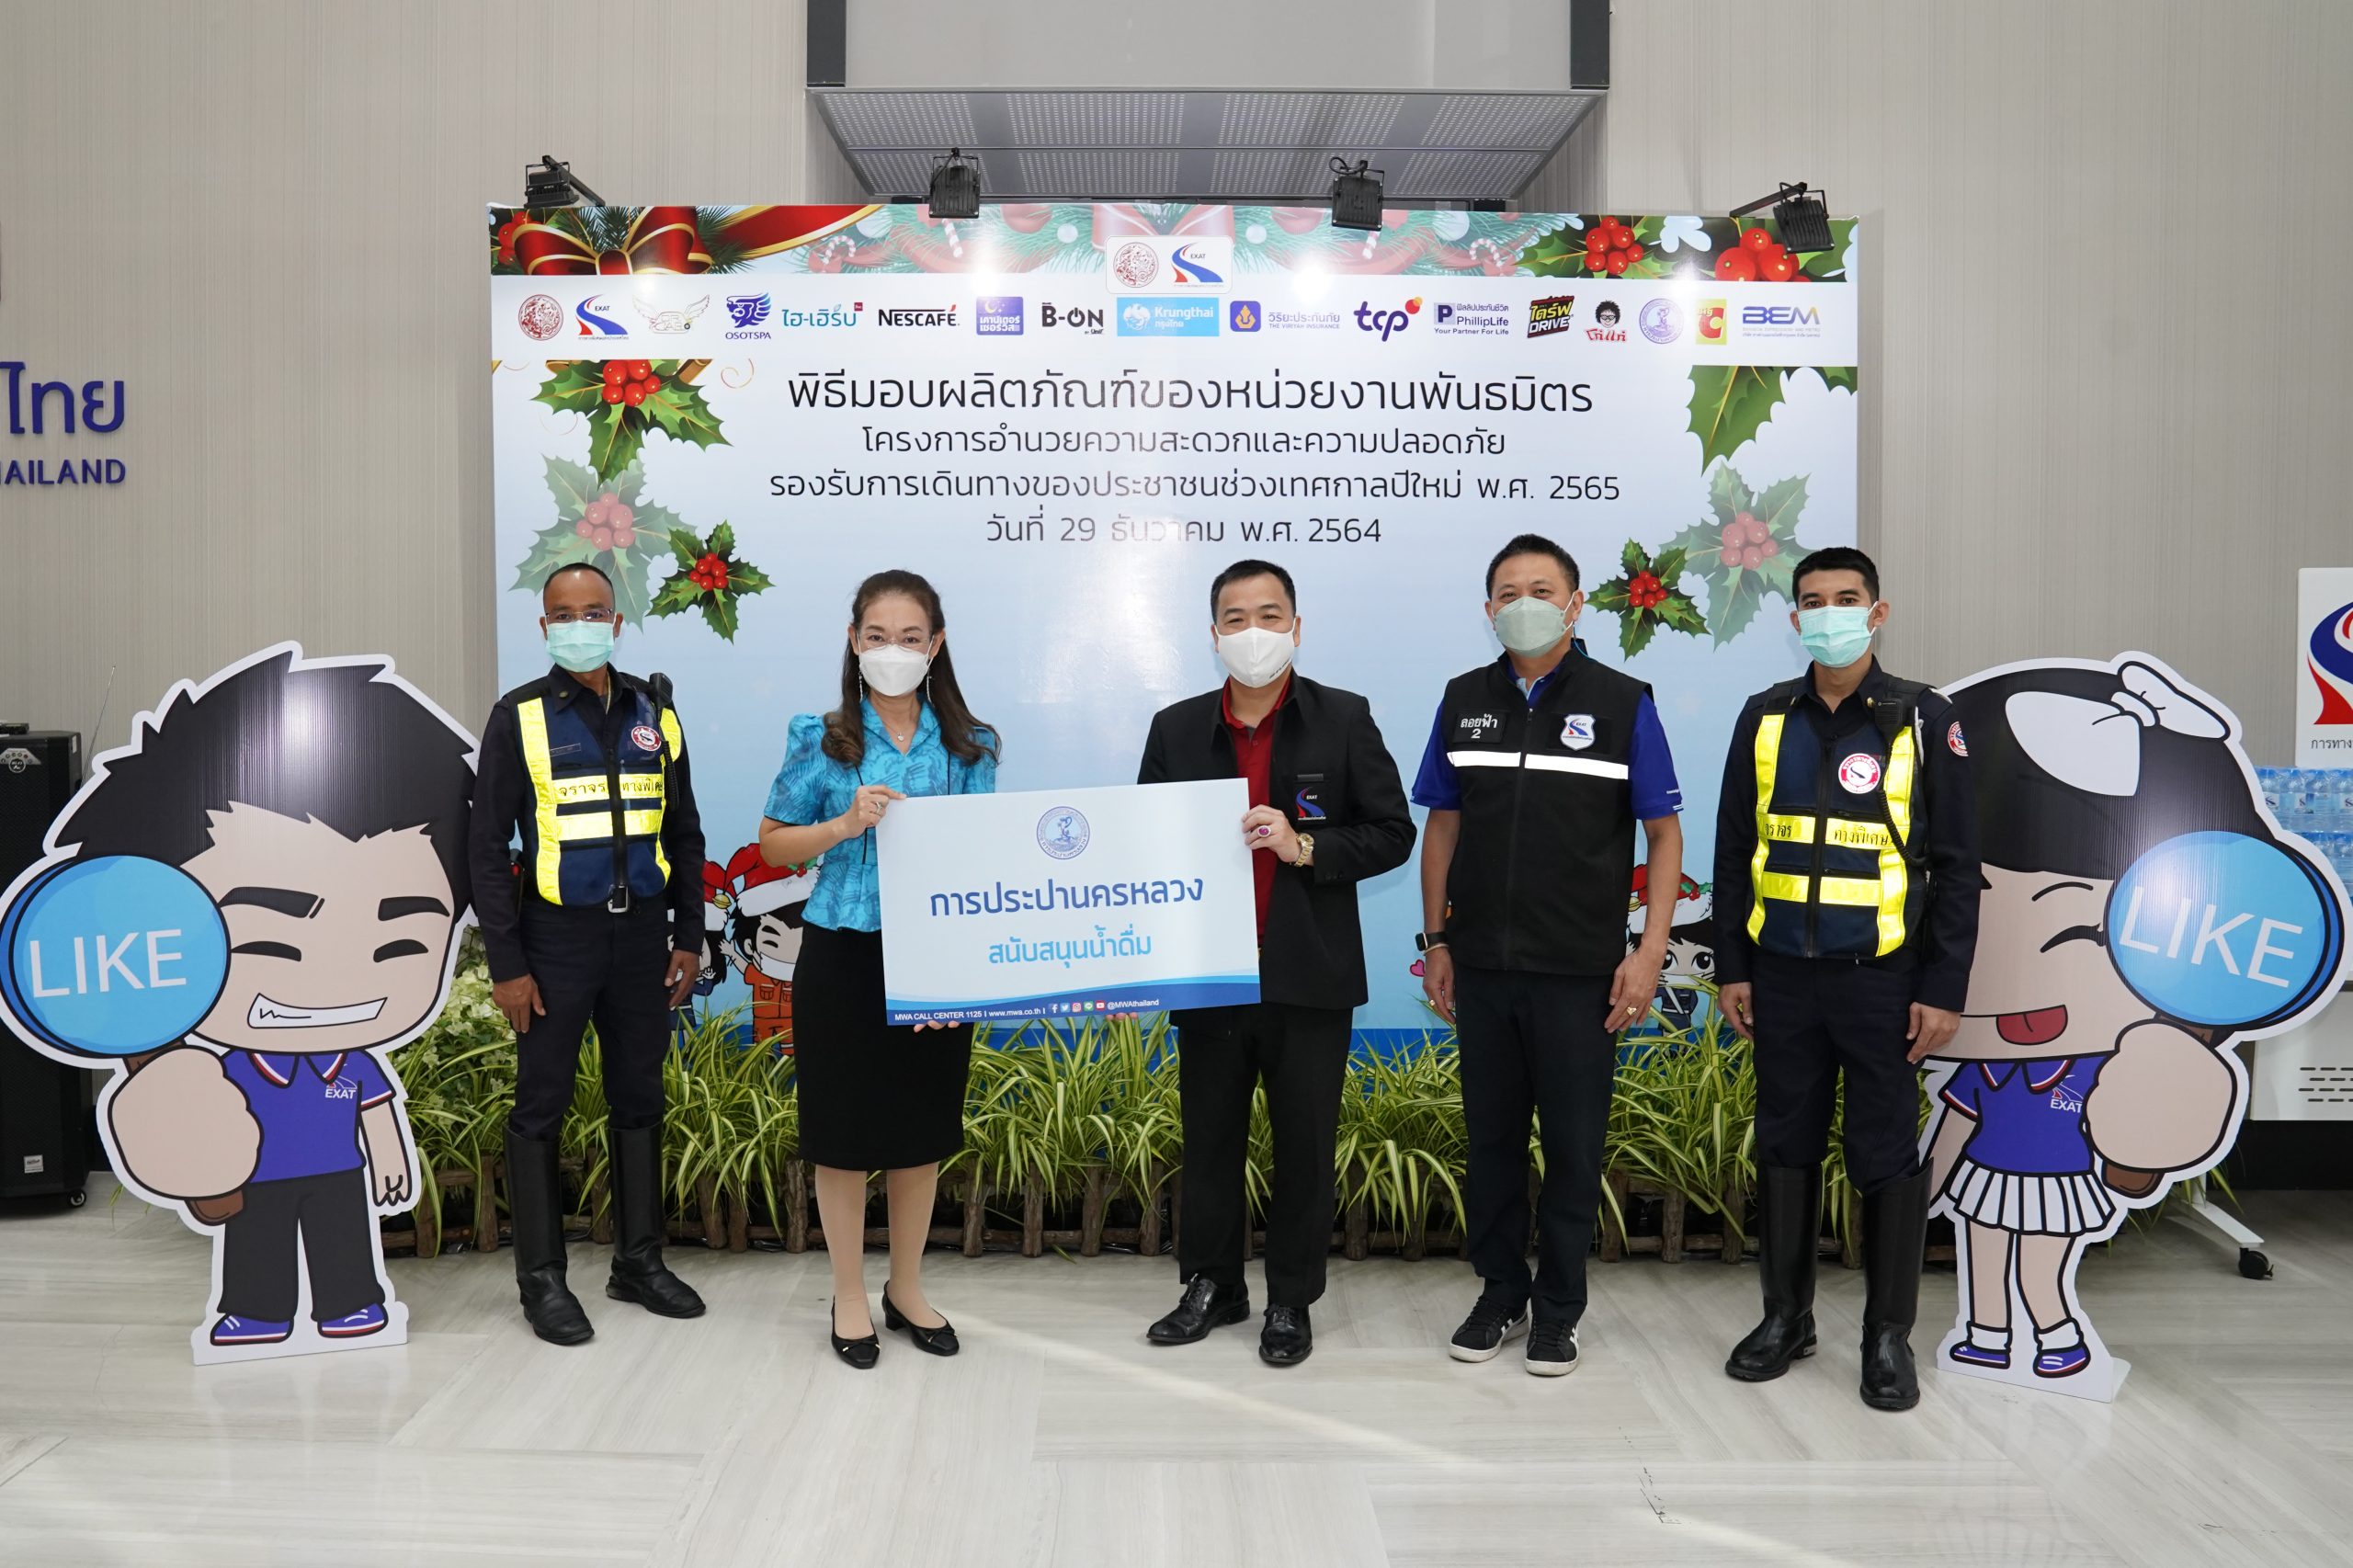 กปน. มอบน้ำดื่มสนับสนุนโครงการอำนวยความสะดวกและปลอดภัย รองรับการเดินทางของประชาชน ช่วงเทศกาลปีใหม่ 2565 การทางพิเศษแห่งประเทศไทย